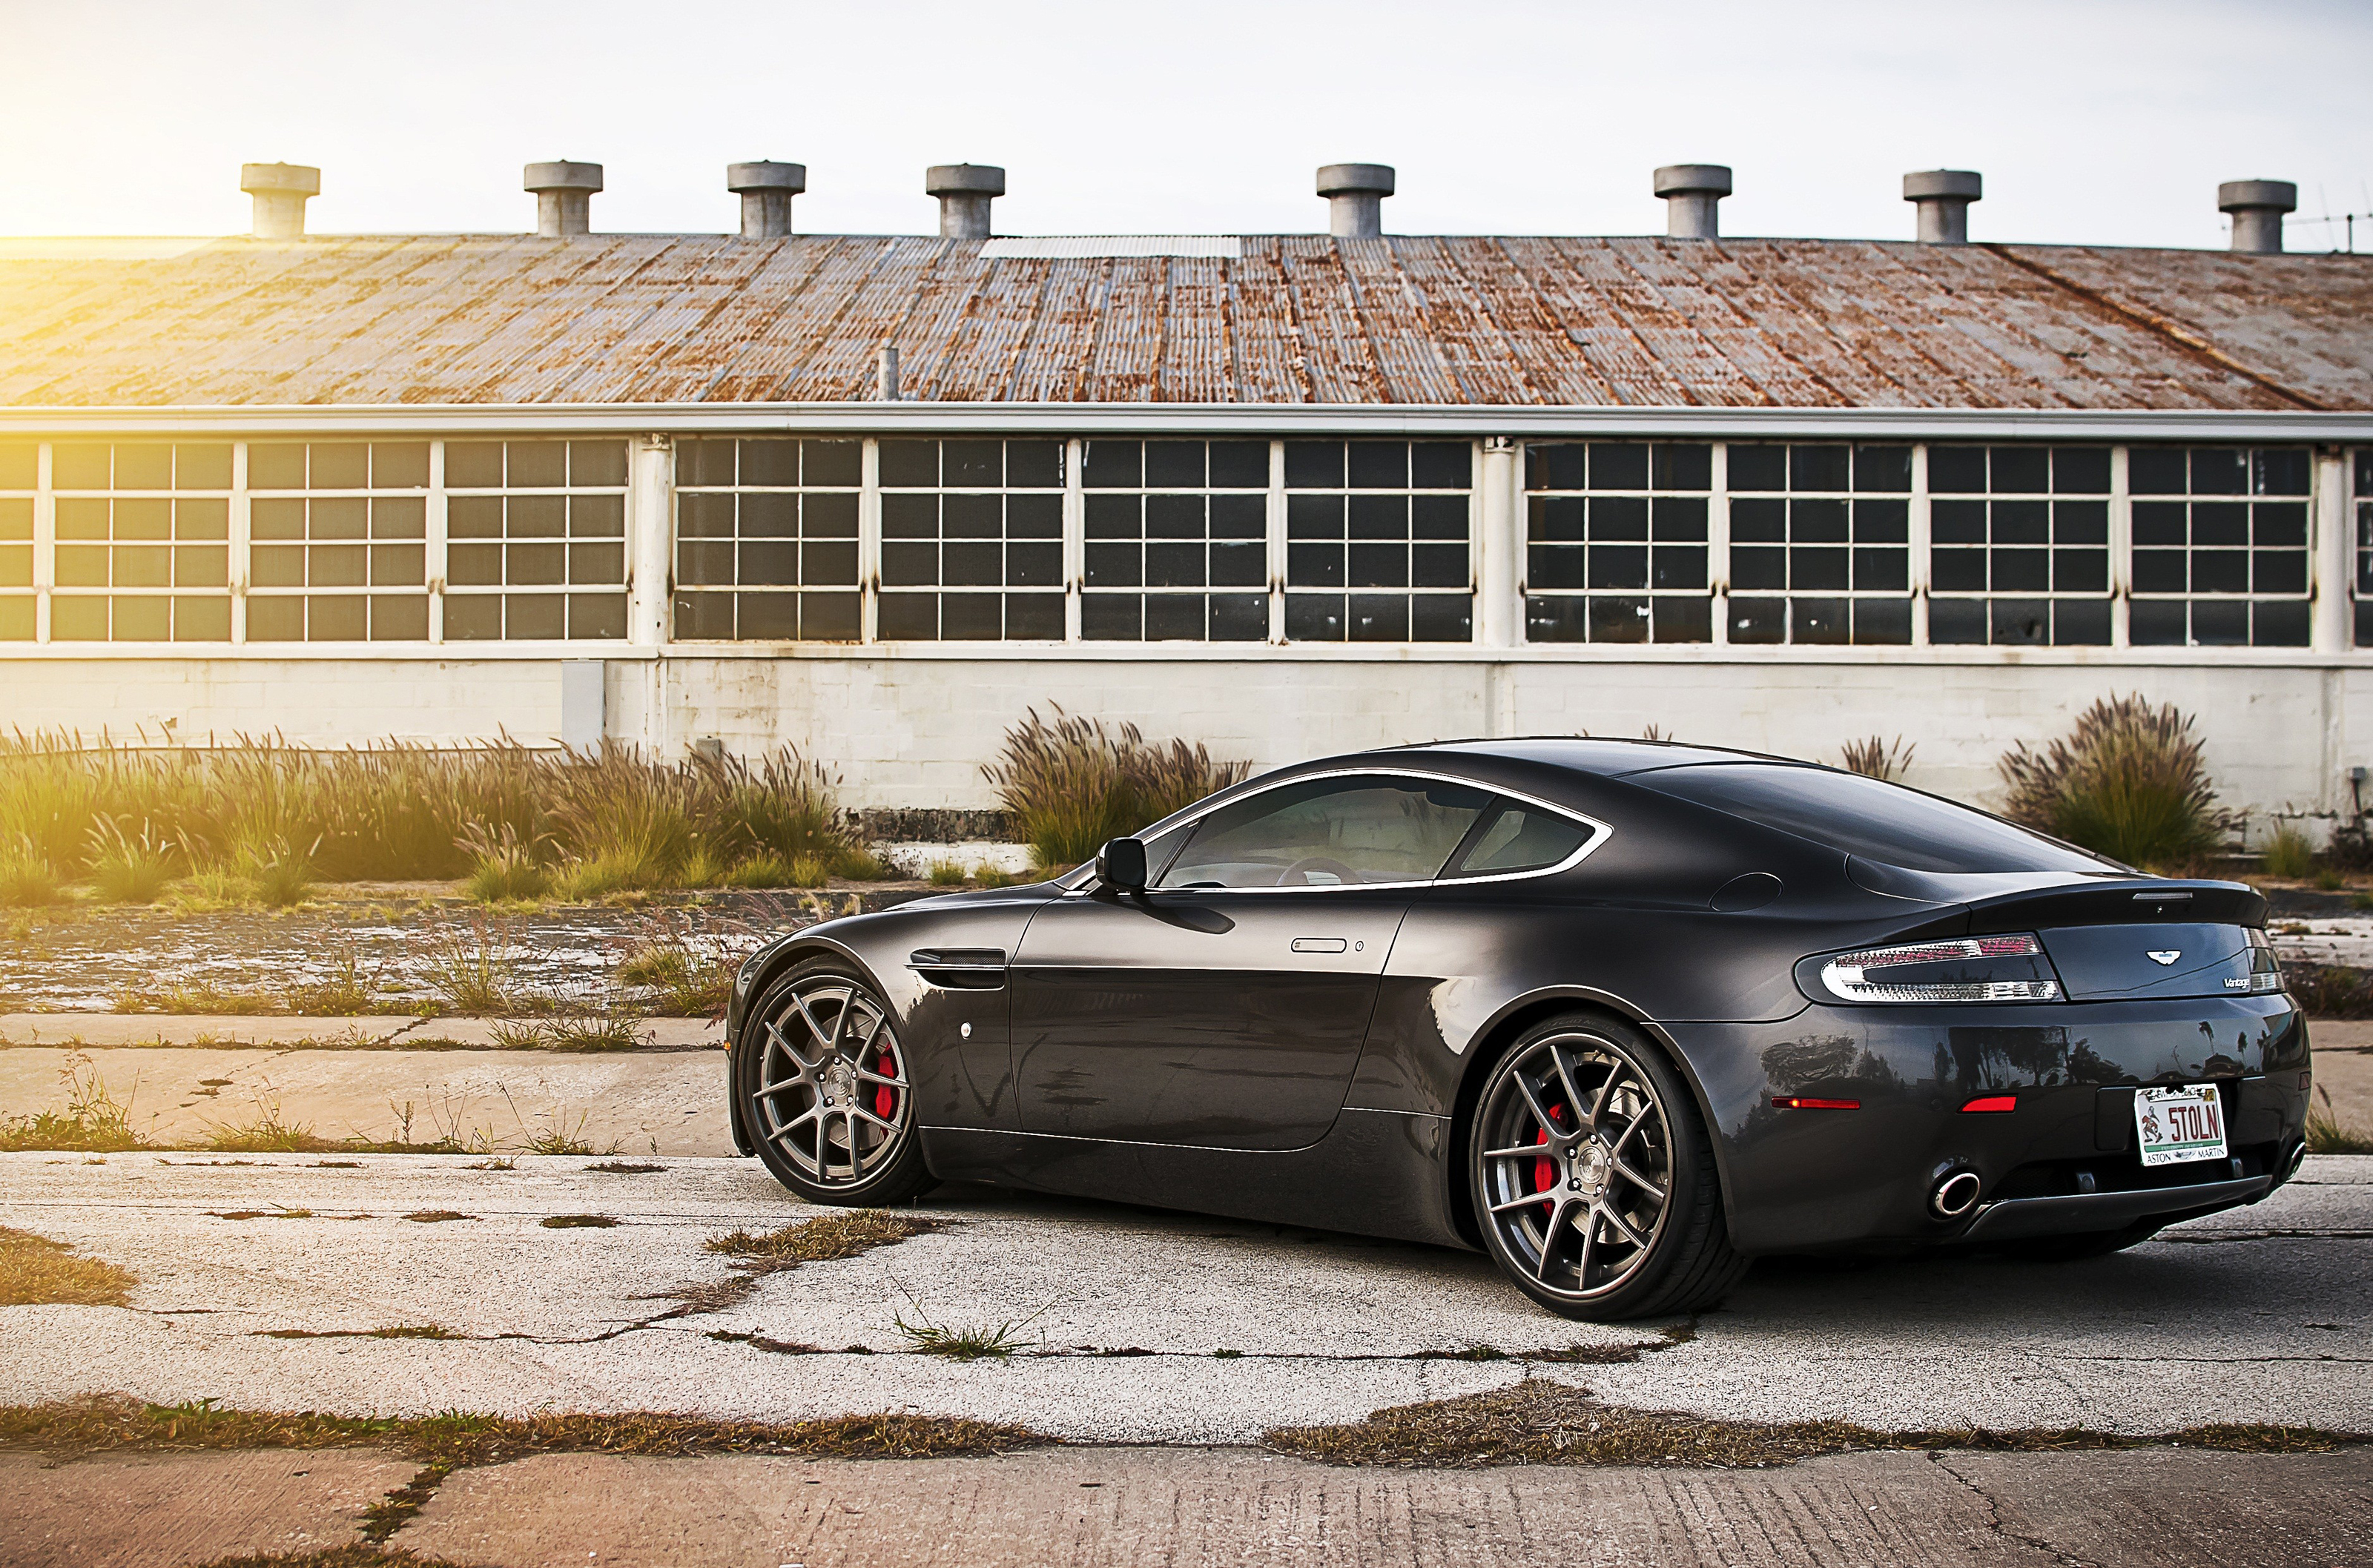 Aston Martin V8 Vantage Wallpapers